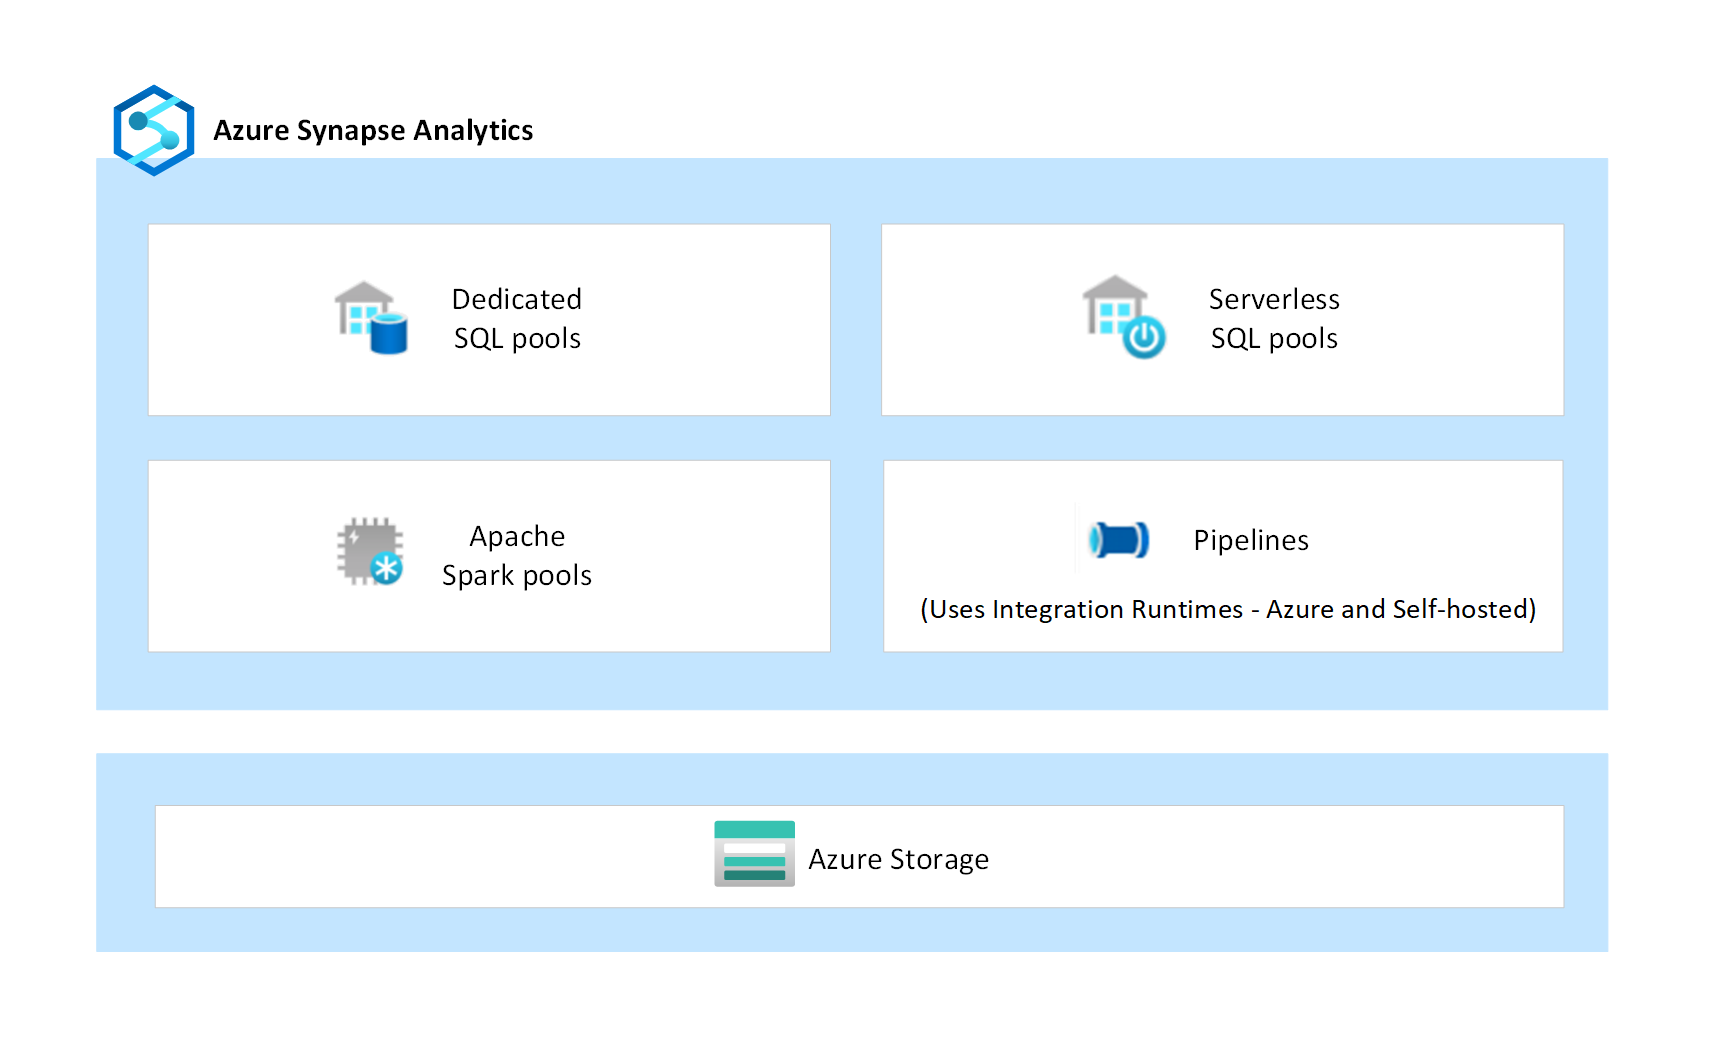 Diagramme des composants Azure Synapse montrant des pools SQL dédiés, des pools SQL serverless, des pools Apache Spark et des pipelines.